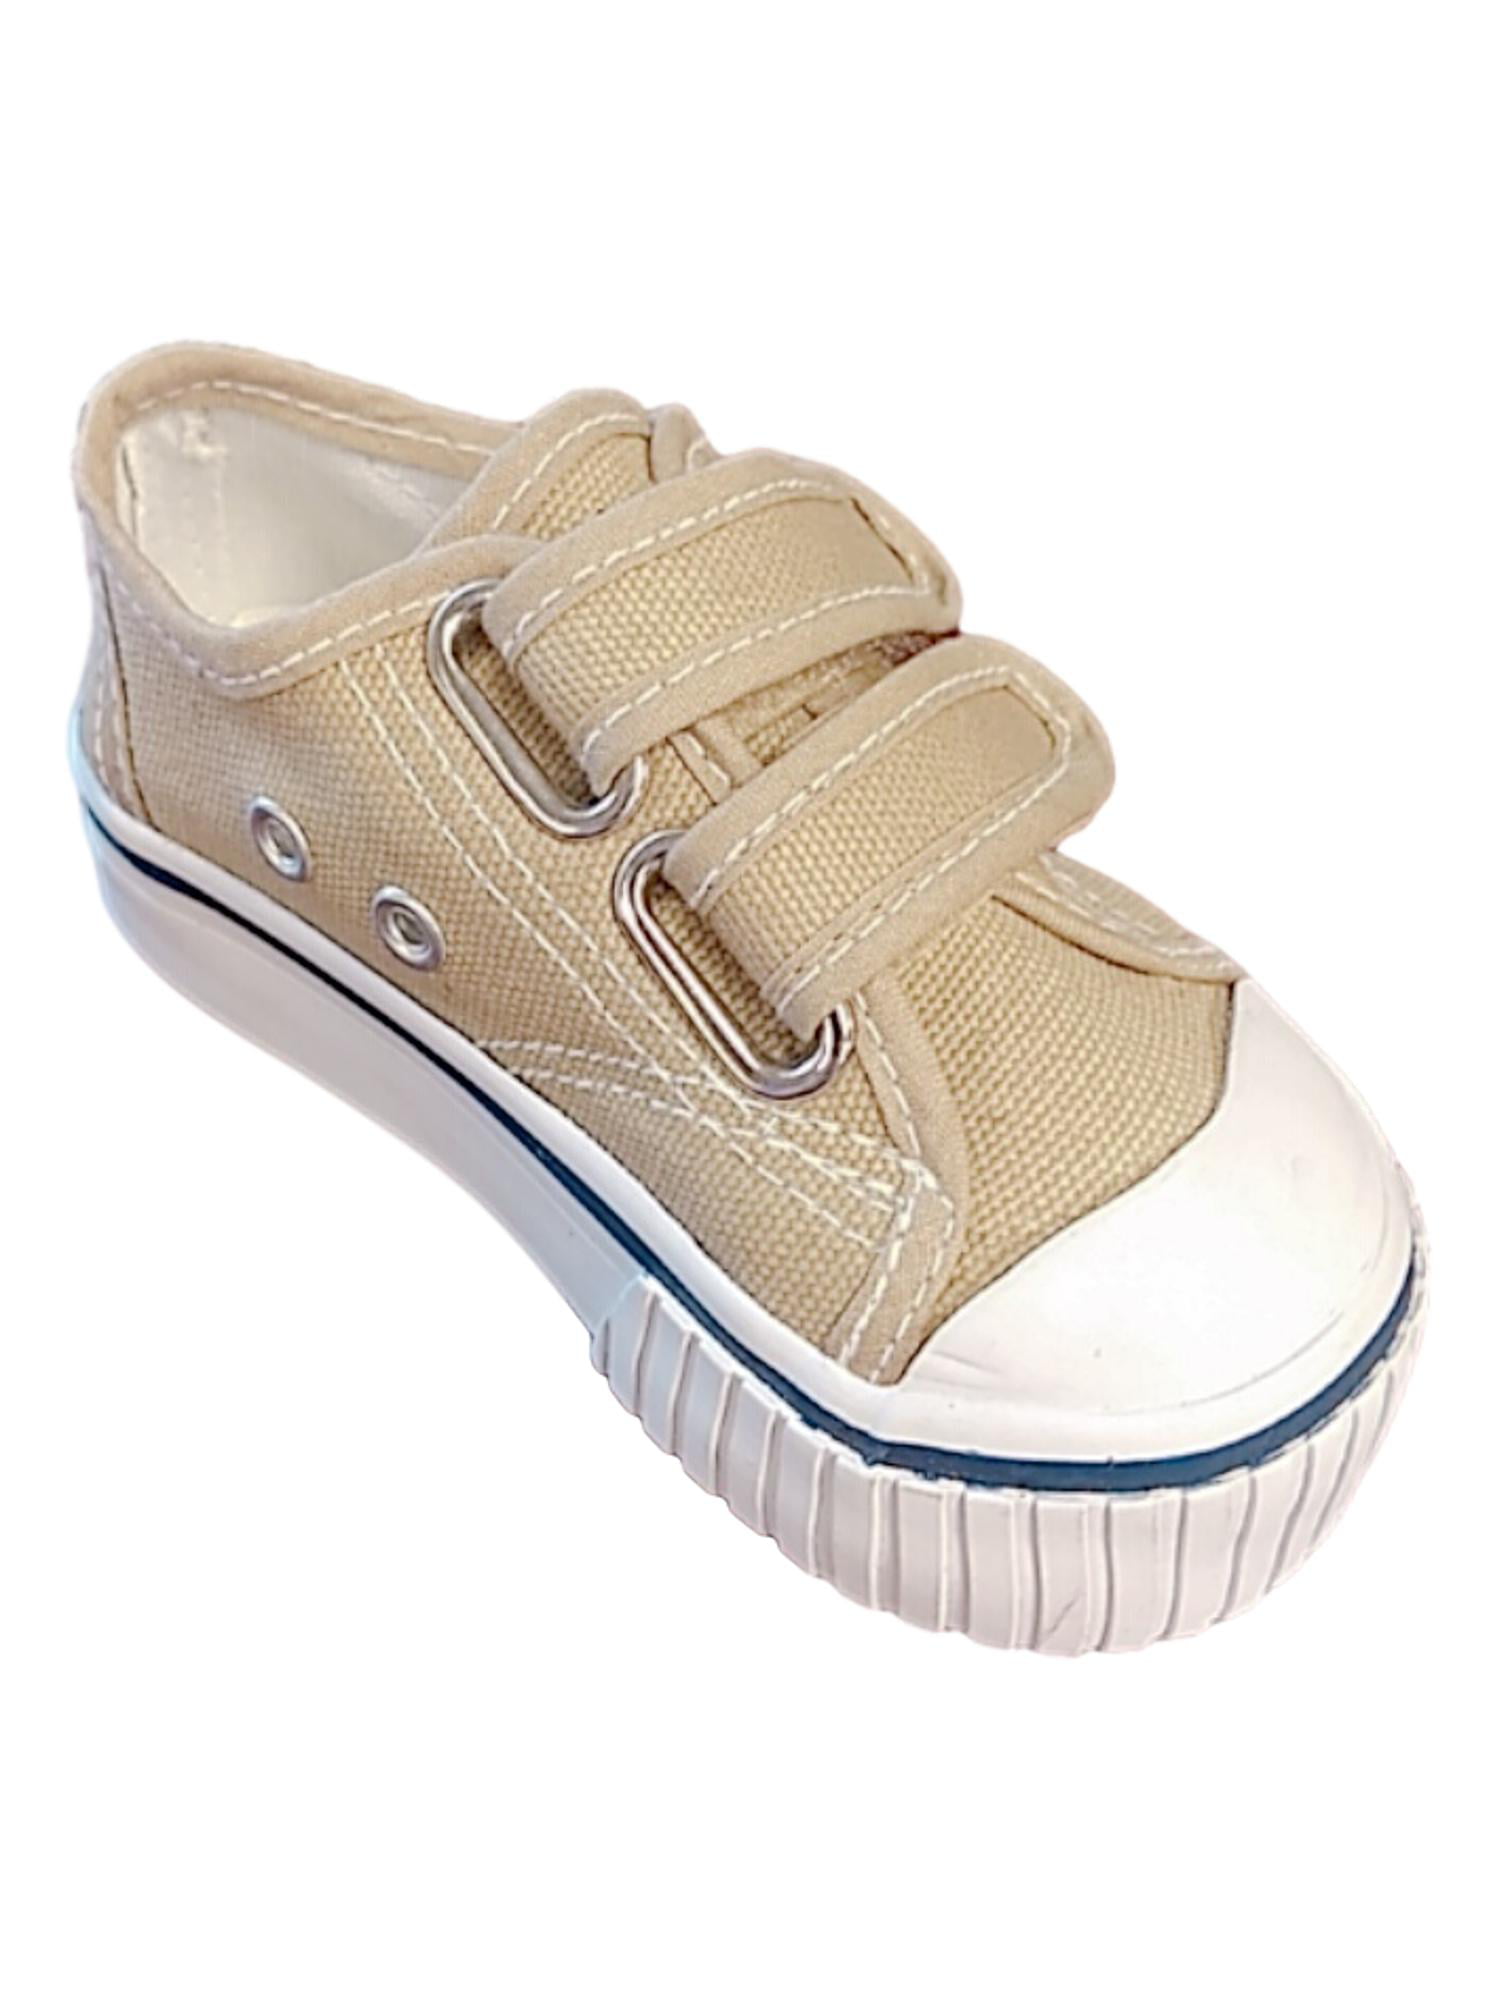 infant boy boat shoes